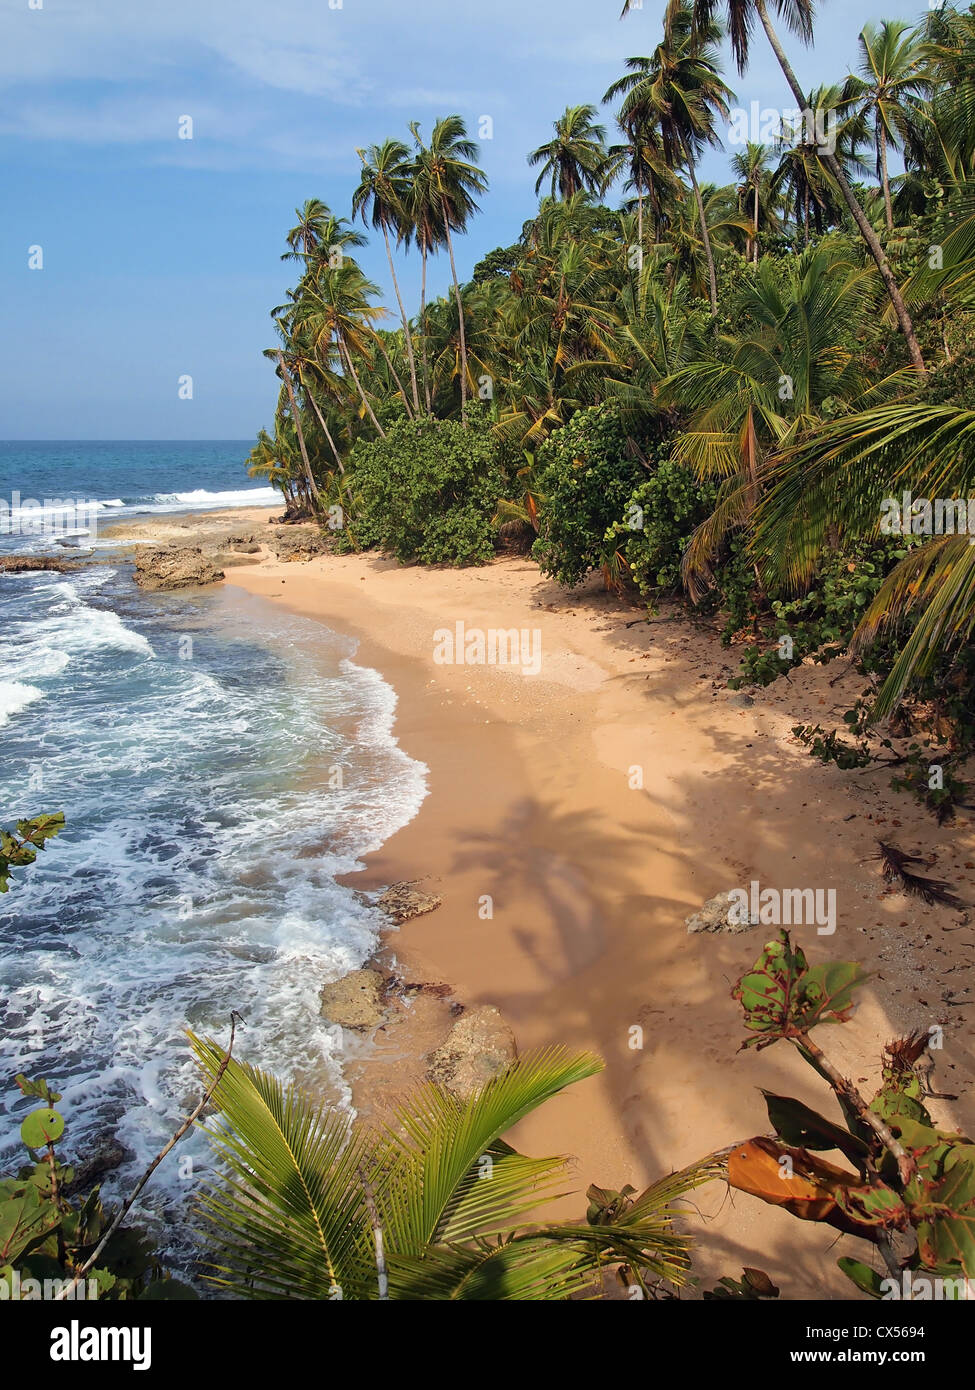 Sombra de árbol de coco en la arena de una playa tropical salvaje, Costa Rica, Centroamérica Foto de stock